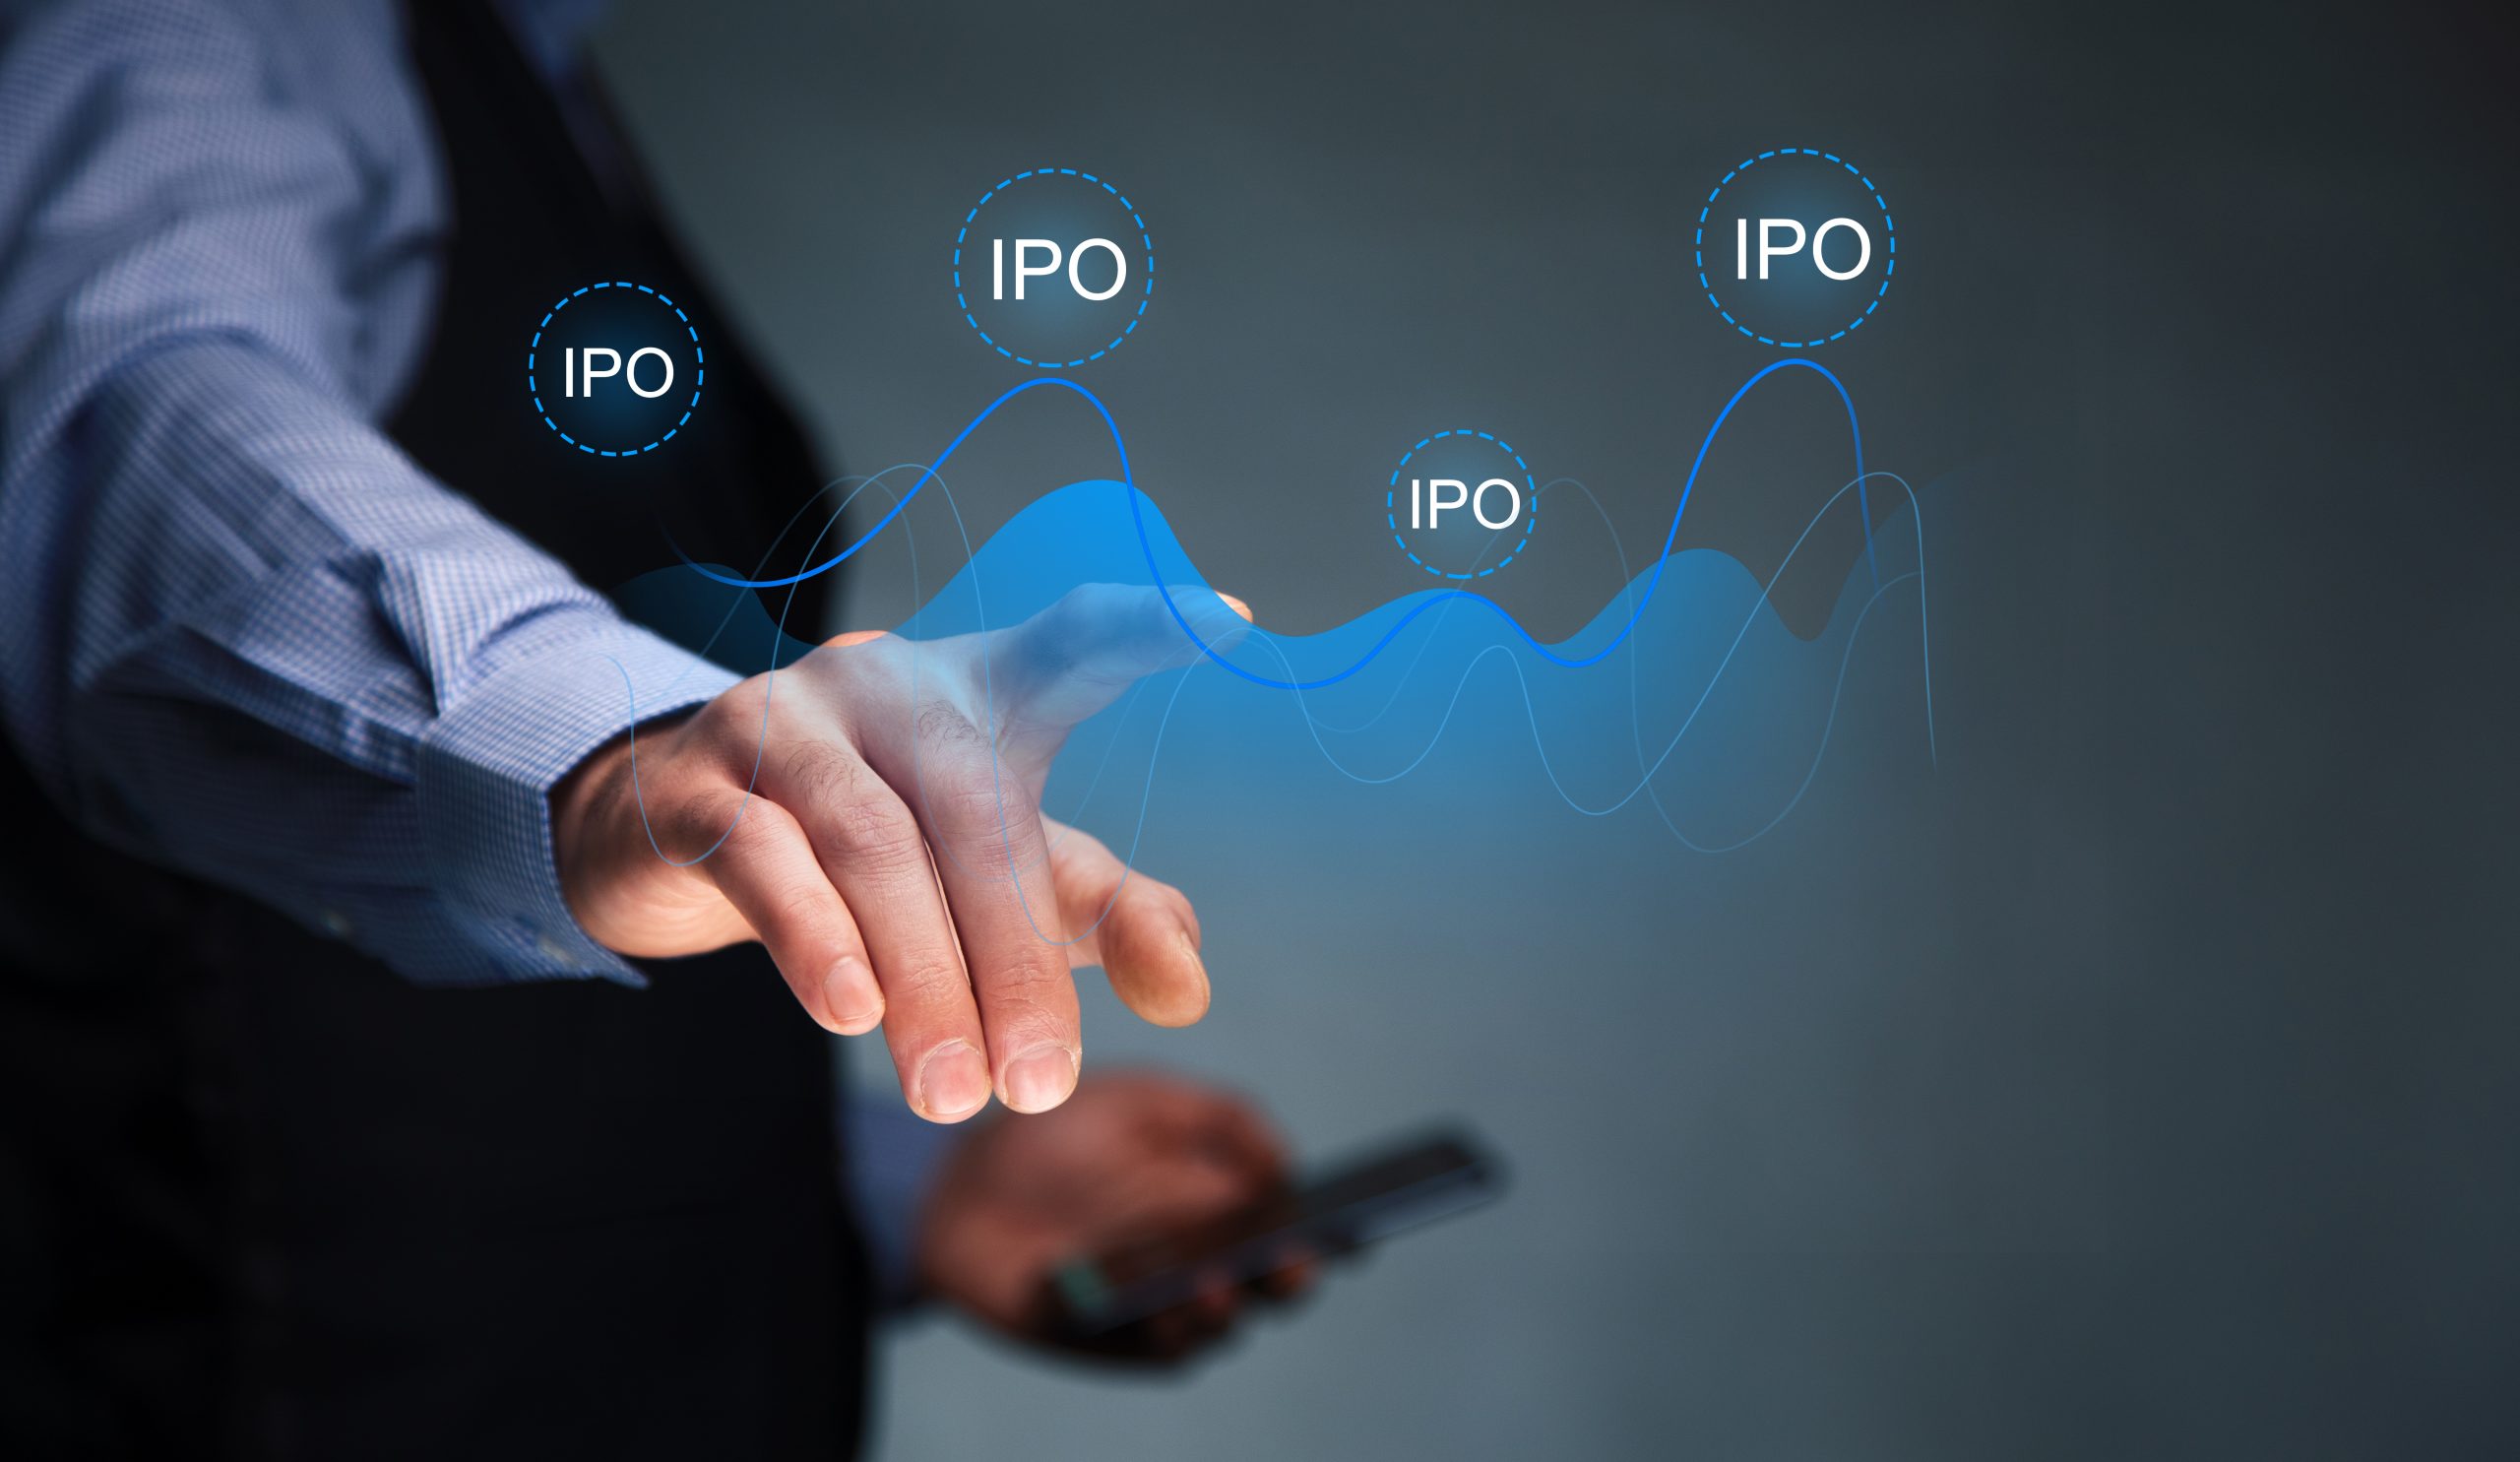 Public offer. IPO картинки. IPO С людьми. IPO И коммуникации. Новая система IPO.